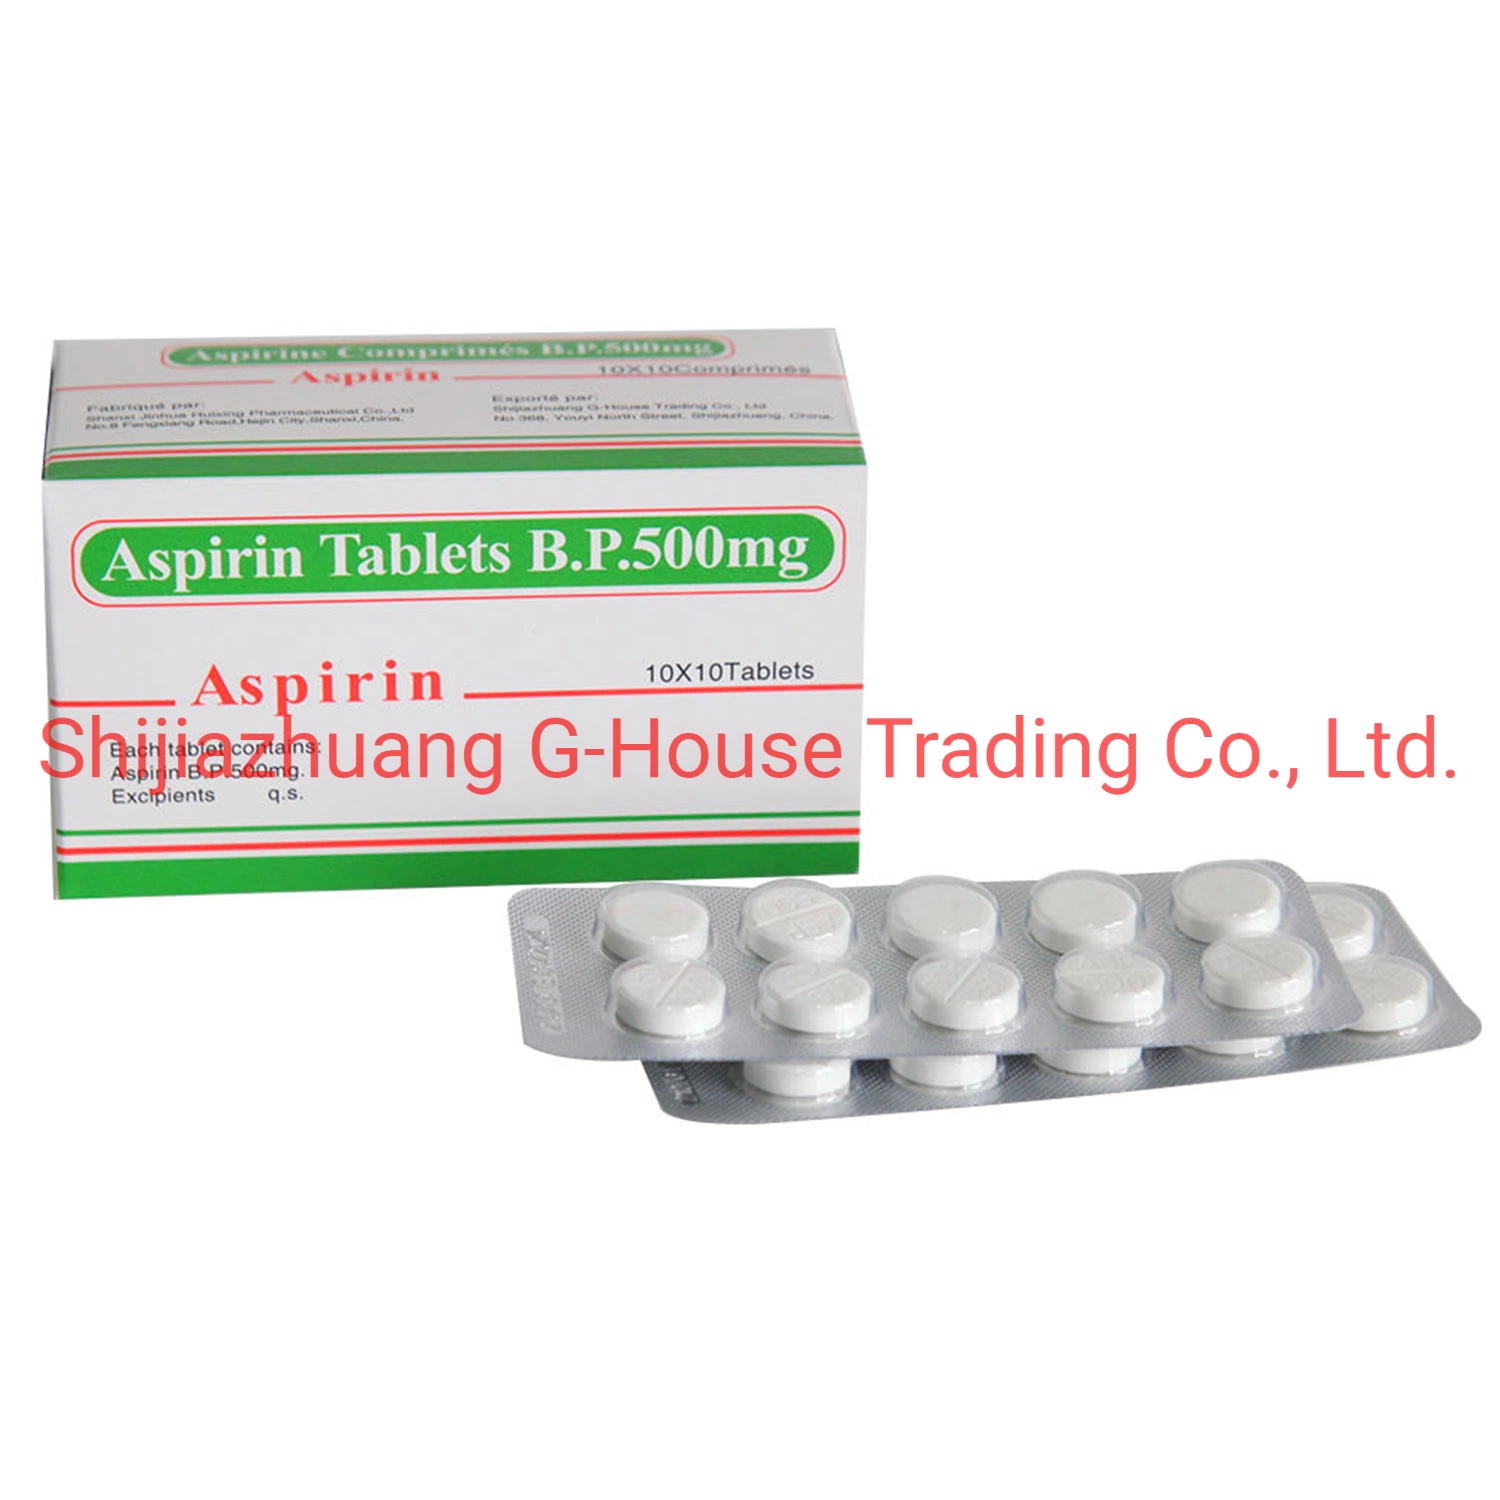 Aspirin Tablets 500mg Finished Medicines Pharmaceuticals Drug